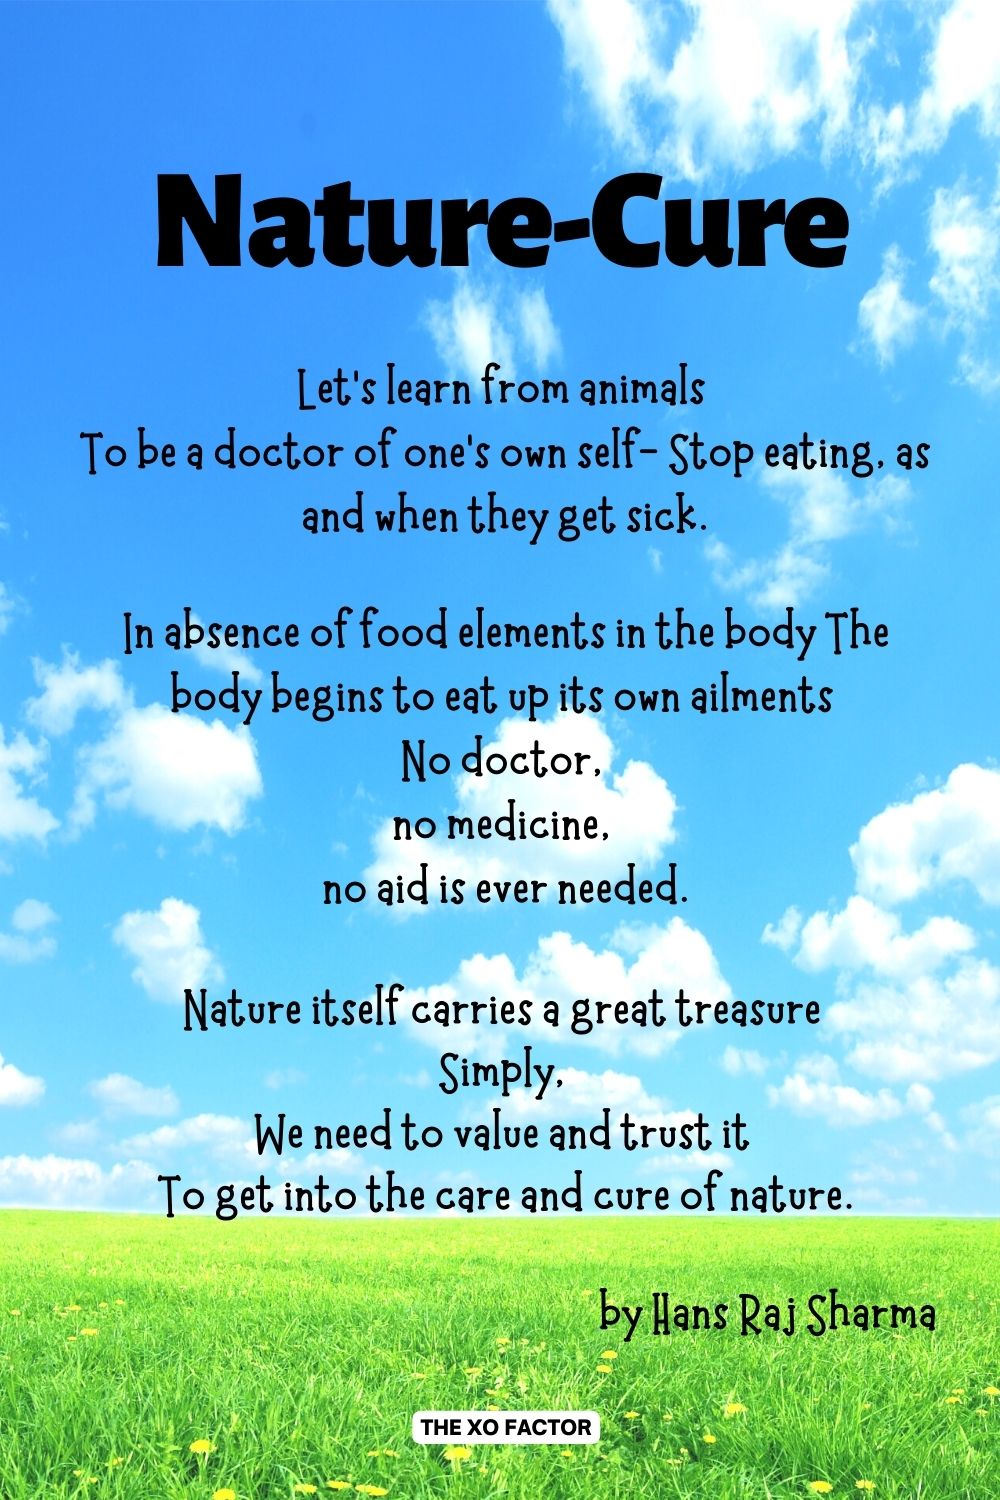 Nature-Cure Poem by Hans Raj Sharma